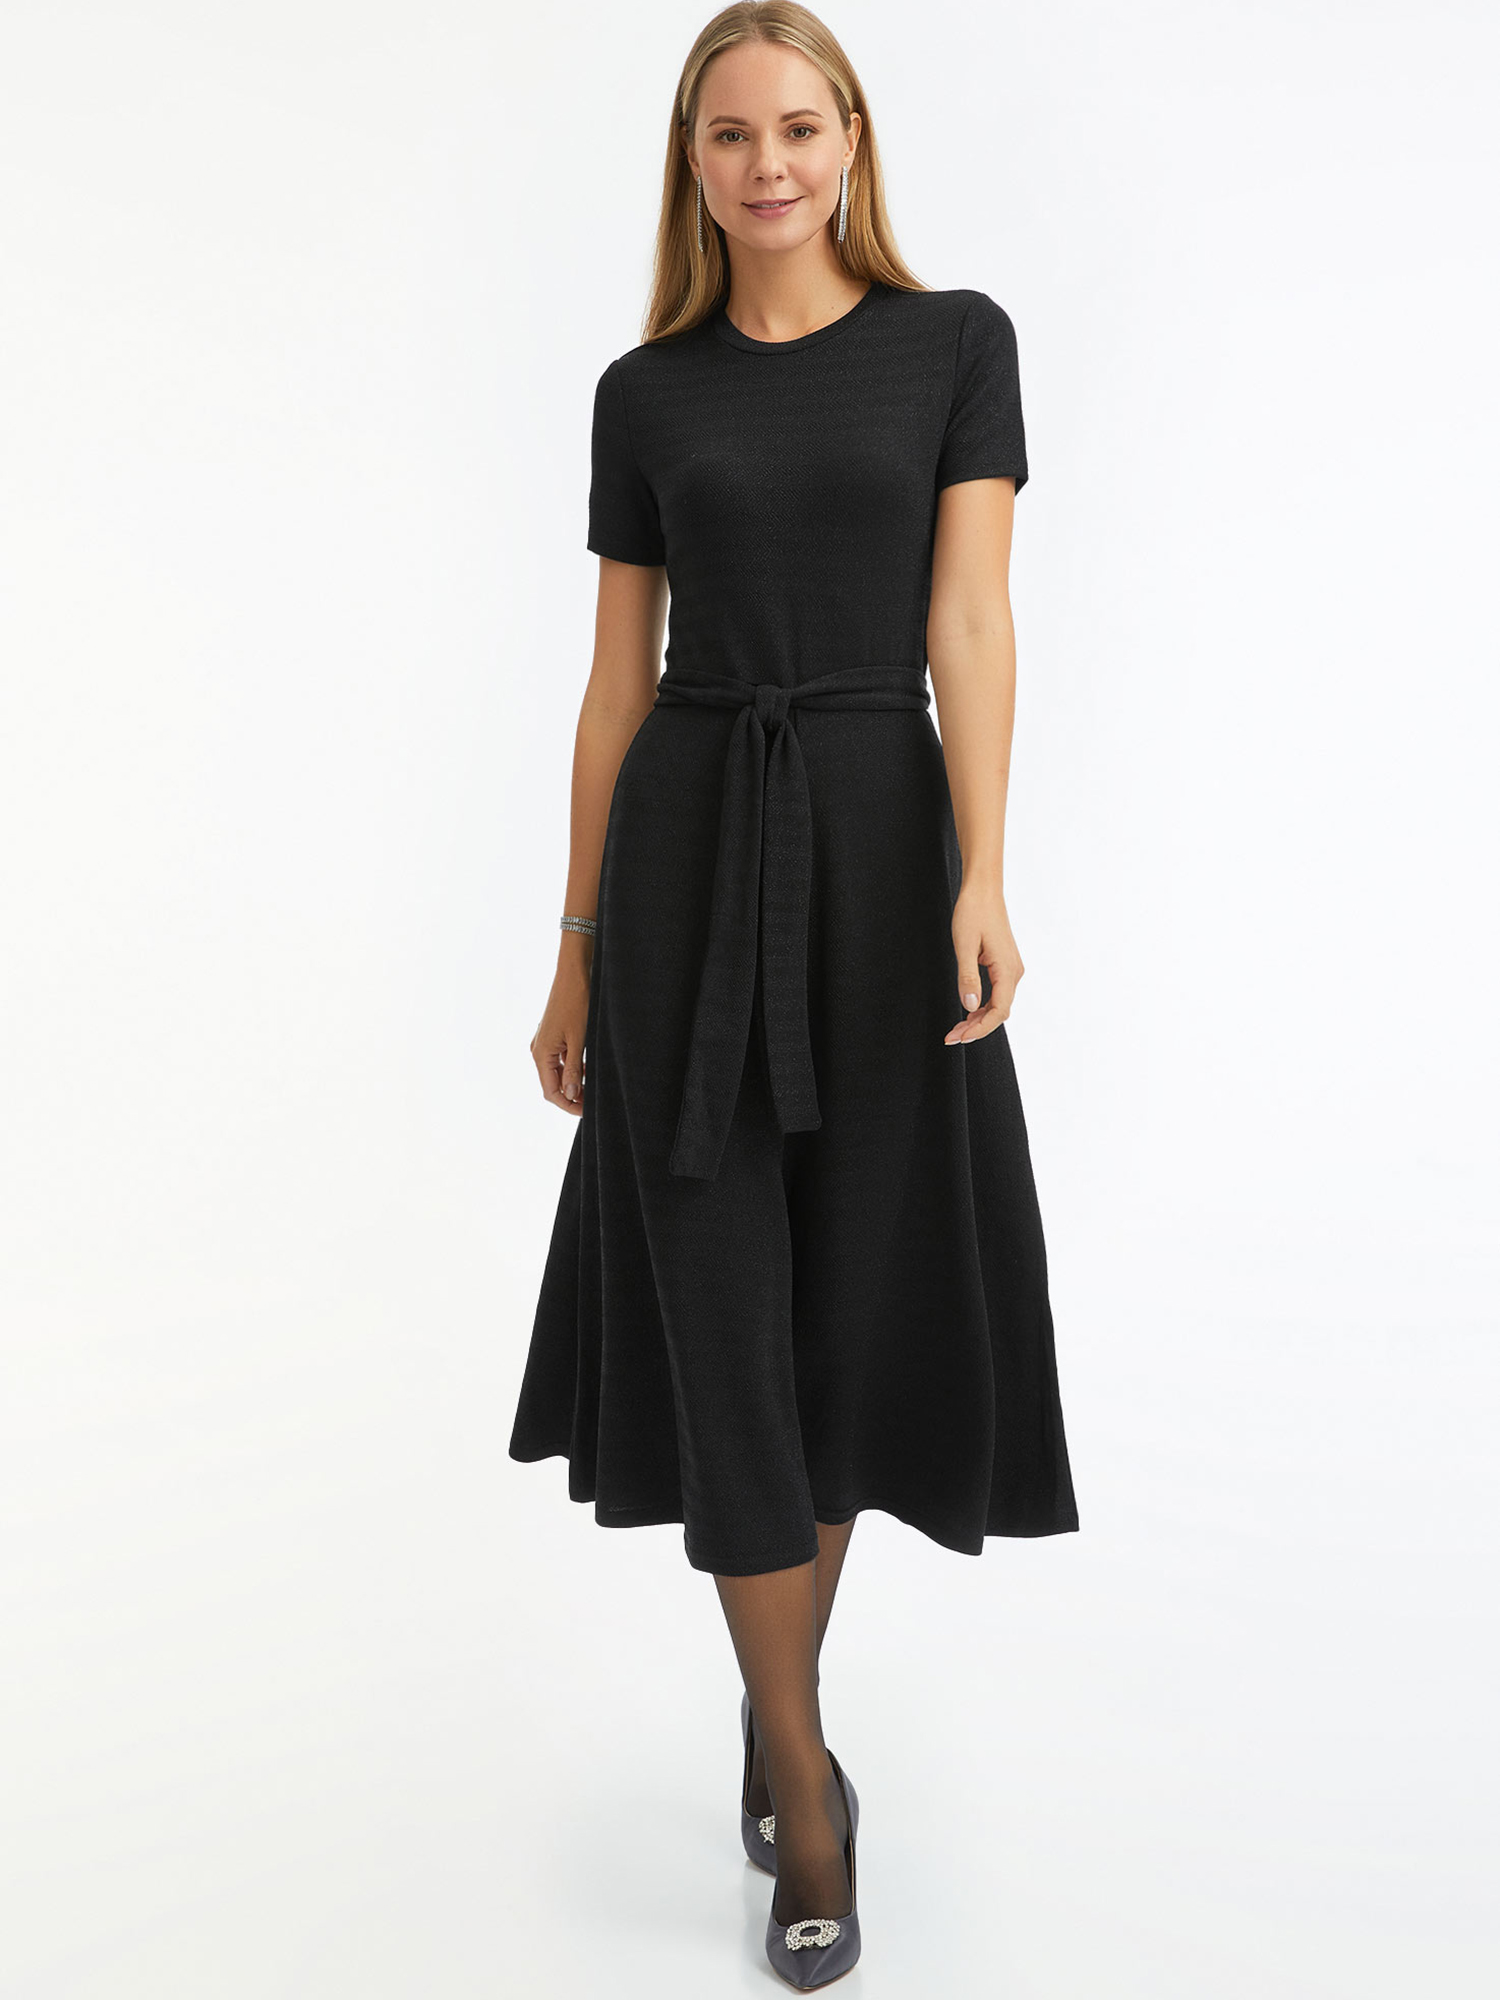 Платье женское oodji 14011090-2 черное XS